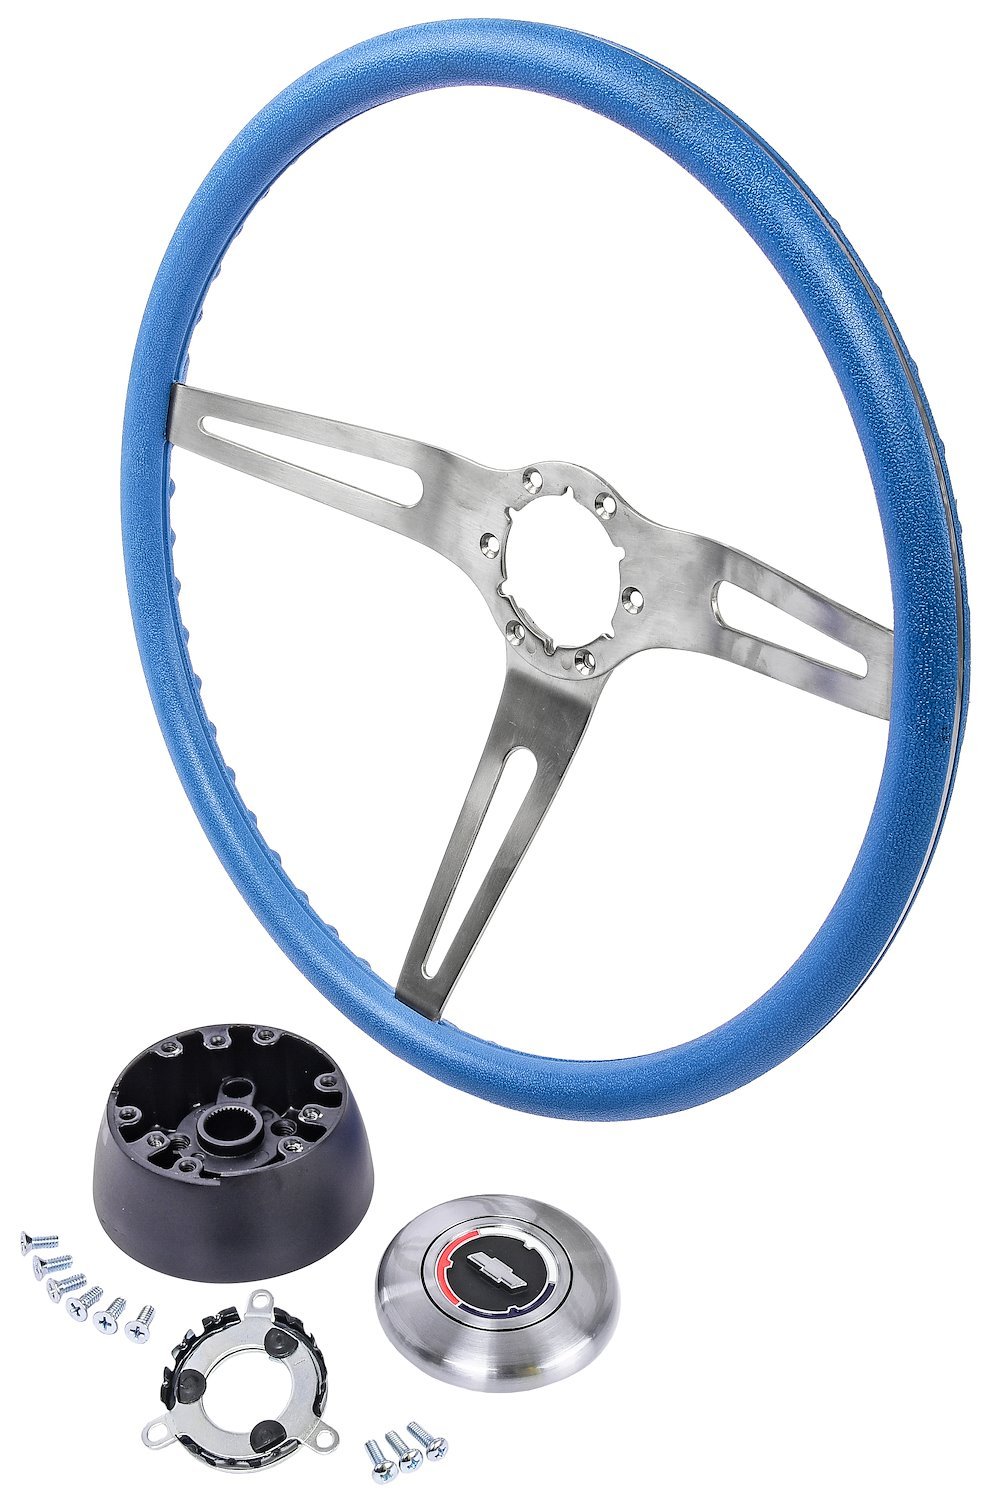 3-Spoke Comfort Grip Steering Wheel Kit Fits Select 1967-1969 Chevrolet Cars & 1960-1975 Chevrolet & GMC Trucks [Blue Grip]